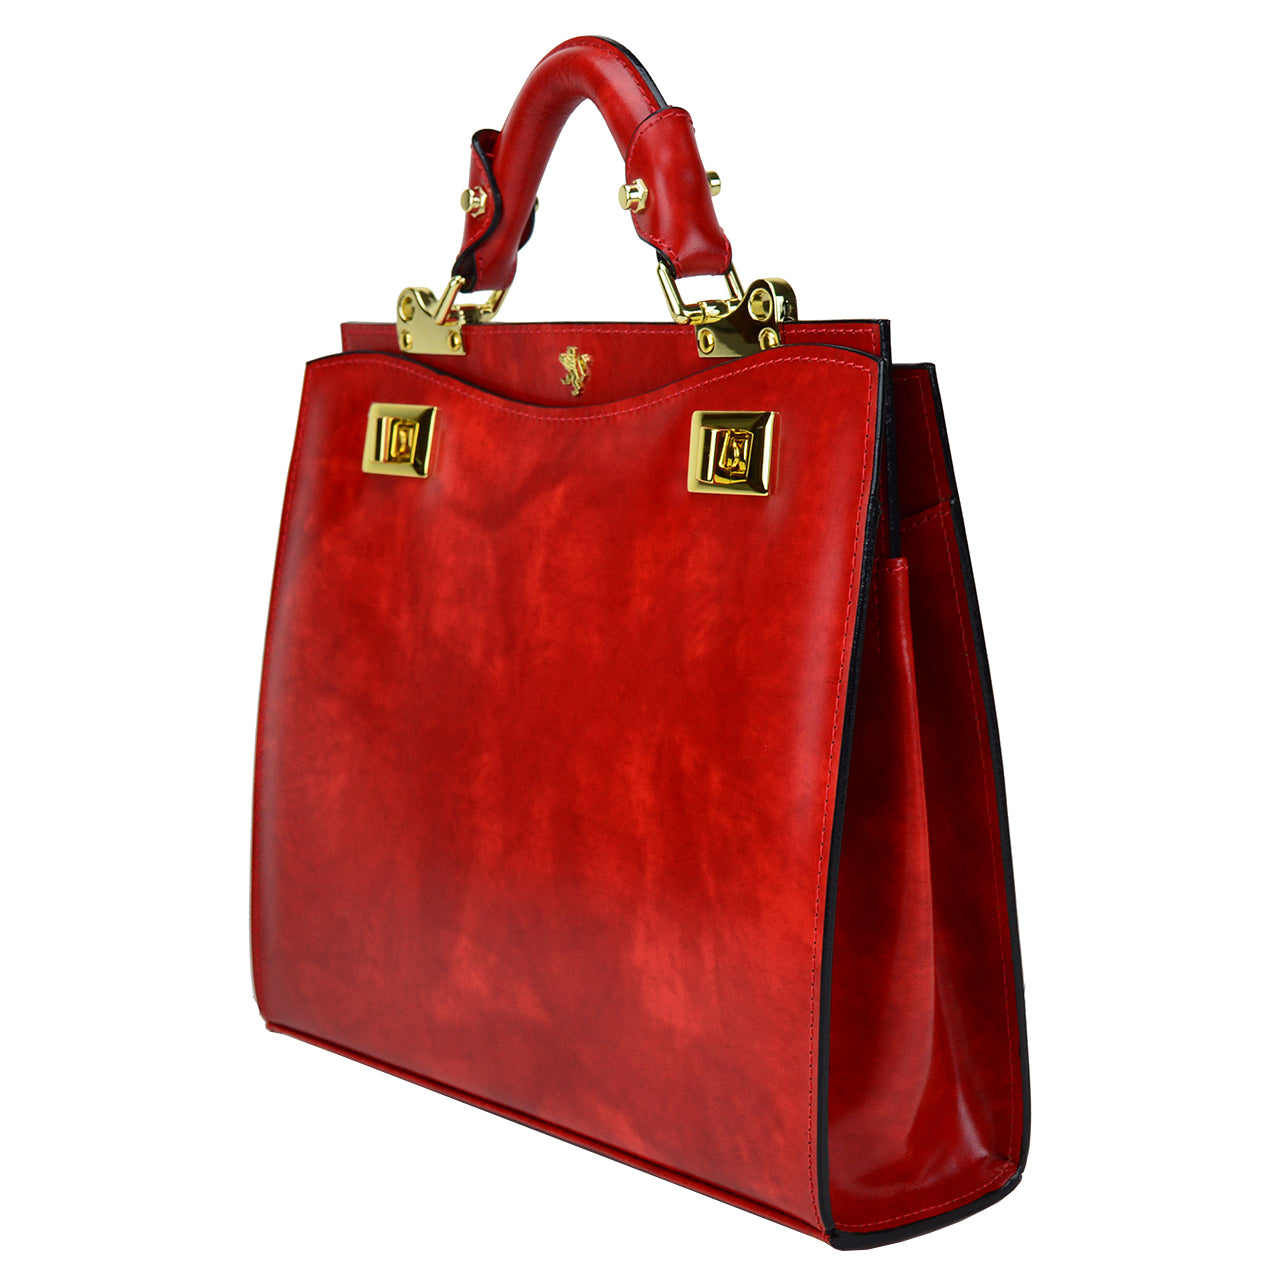 Pratesi Anna Maria Luisa de' Medici Medium Lady Bag in genuine Italian leather - Brunelleschi Leather Coffee